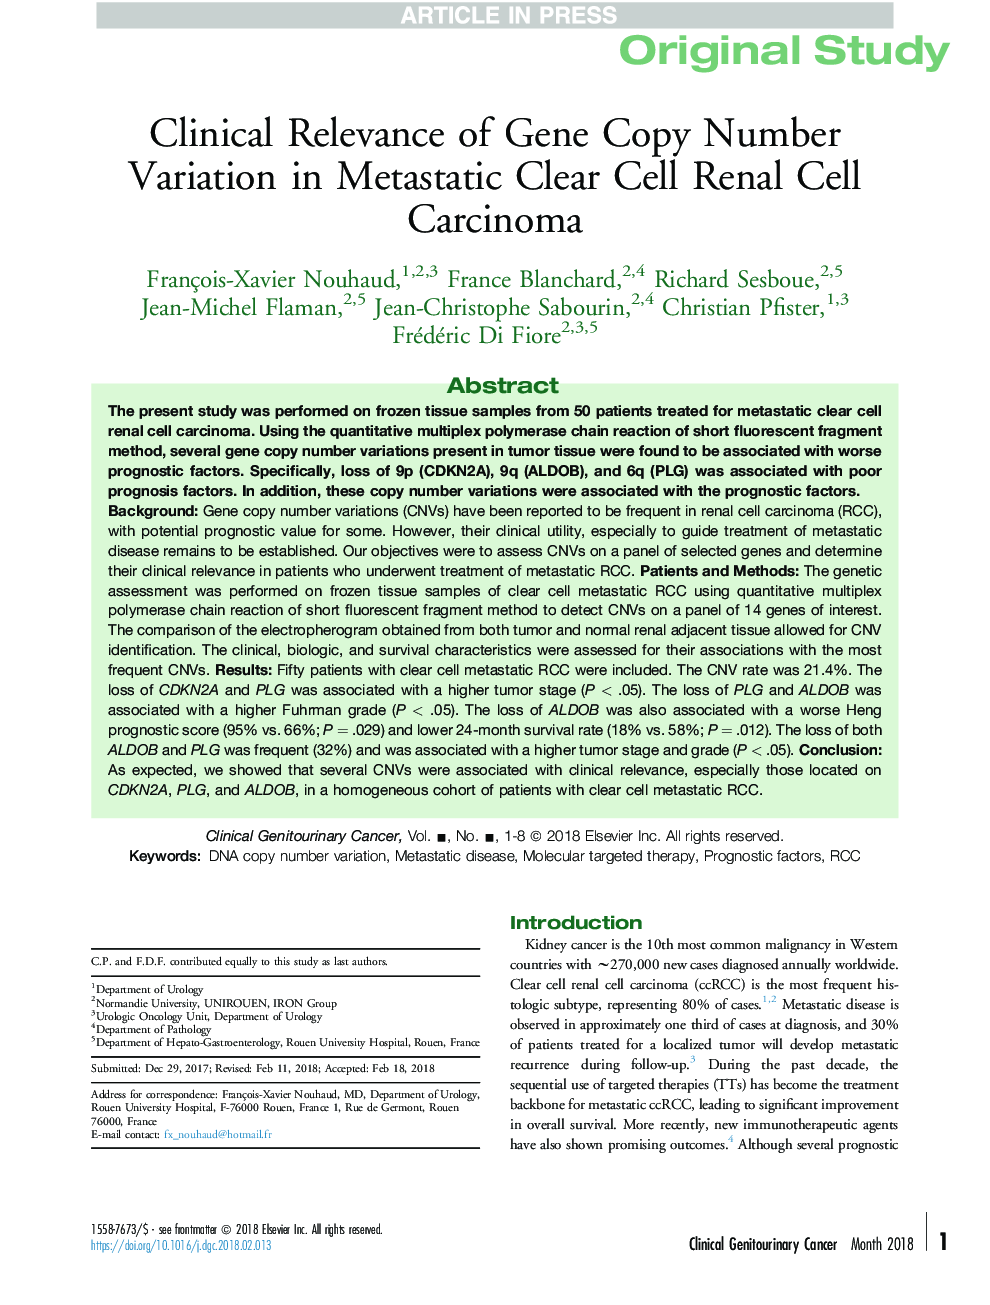 معیارهای کلینیکی تغییر تعداد کپی ژن در کارسینوم سلولهای کلیه سلول های بنیادی متاستاتیک 